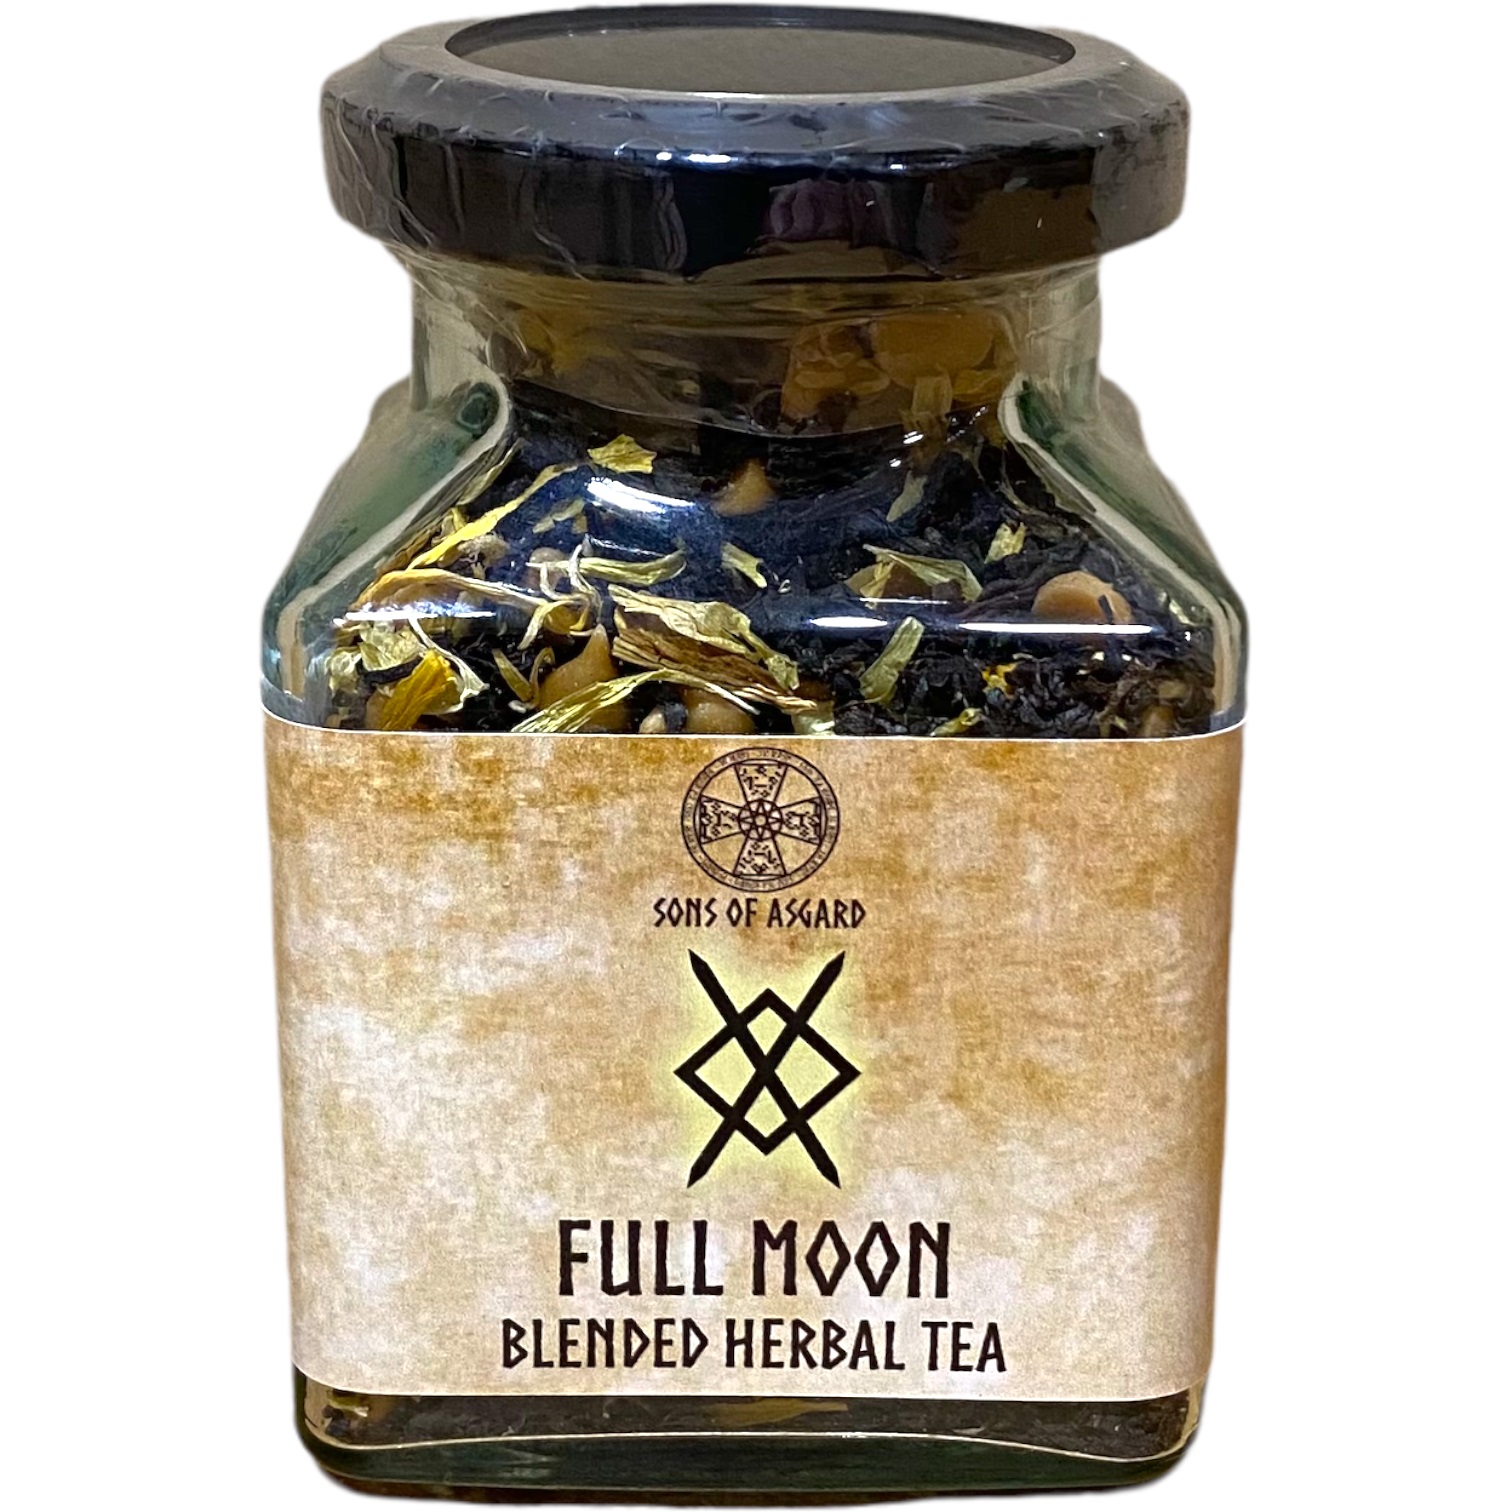 Full Moon - Blended Herbal Tea